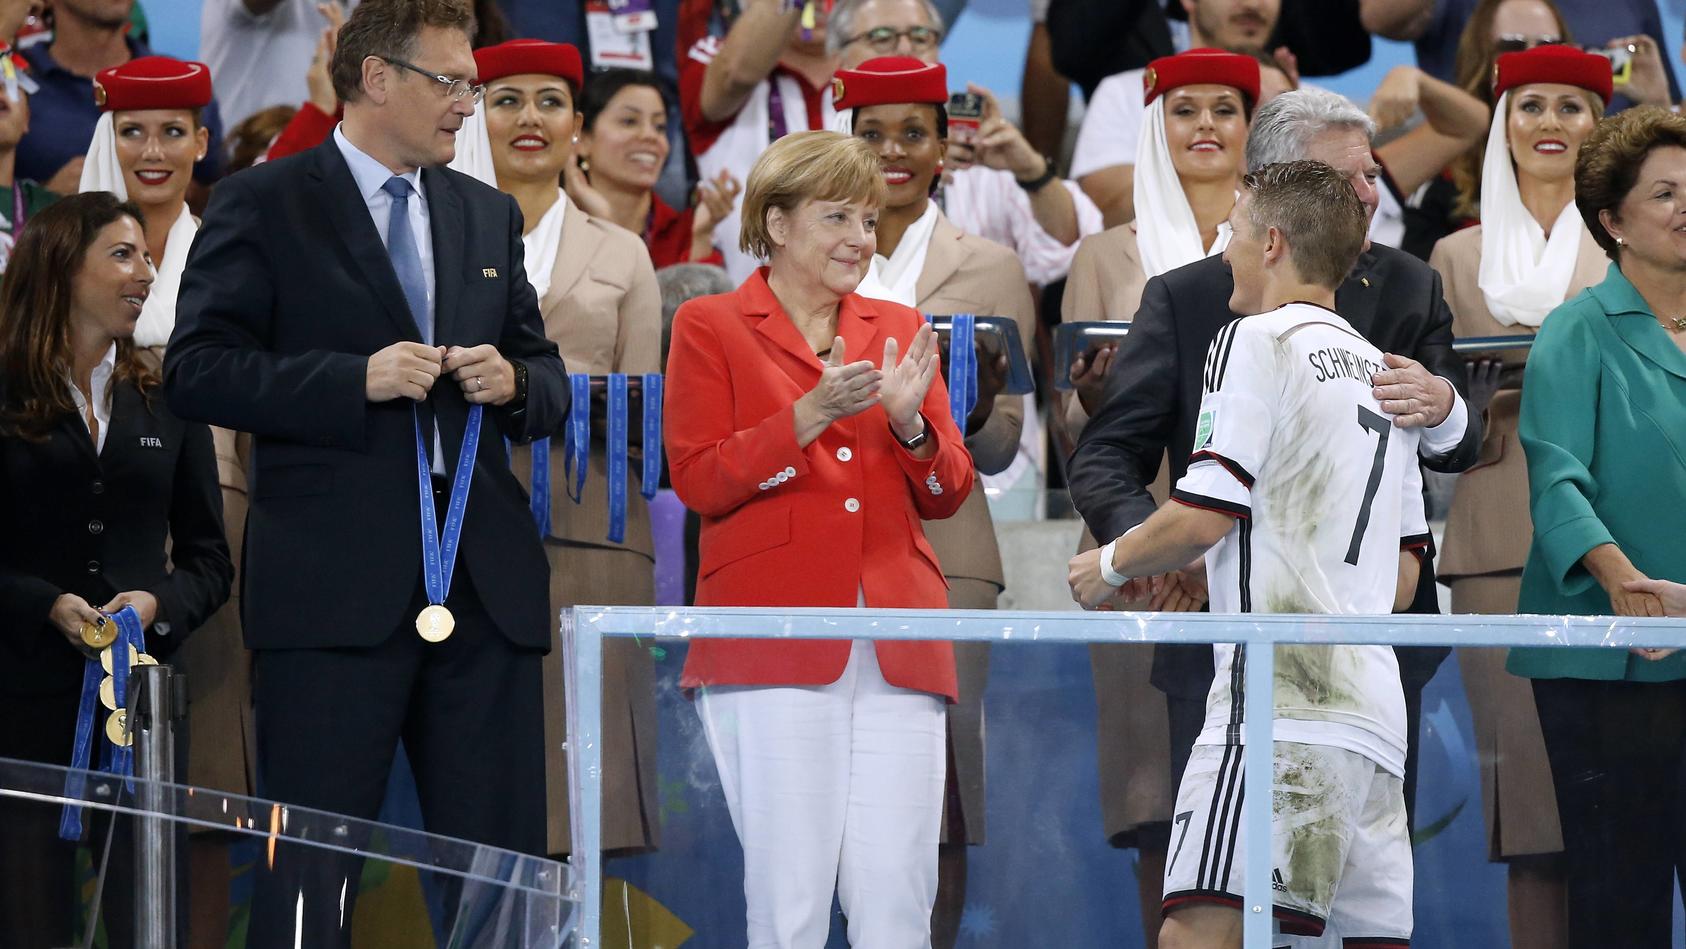 Applaus für den Weltmeister: Angela Merkel beklatscht Bastian Schweinsteiger nach dem Triumph 2014 in Rio